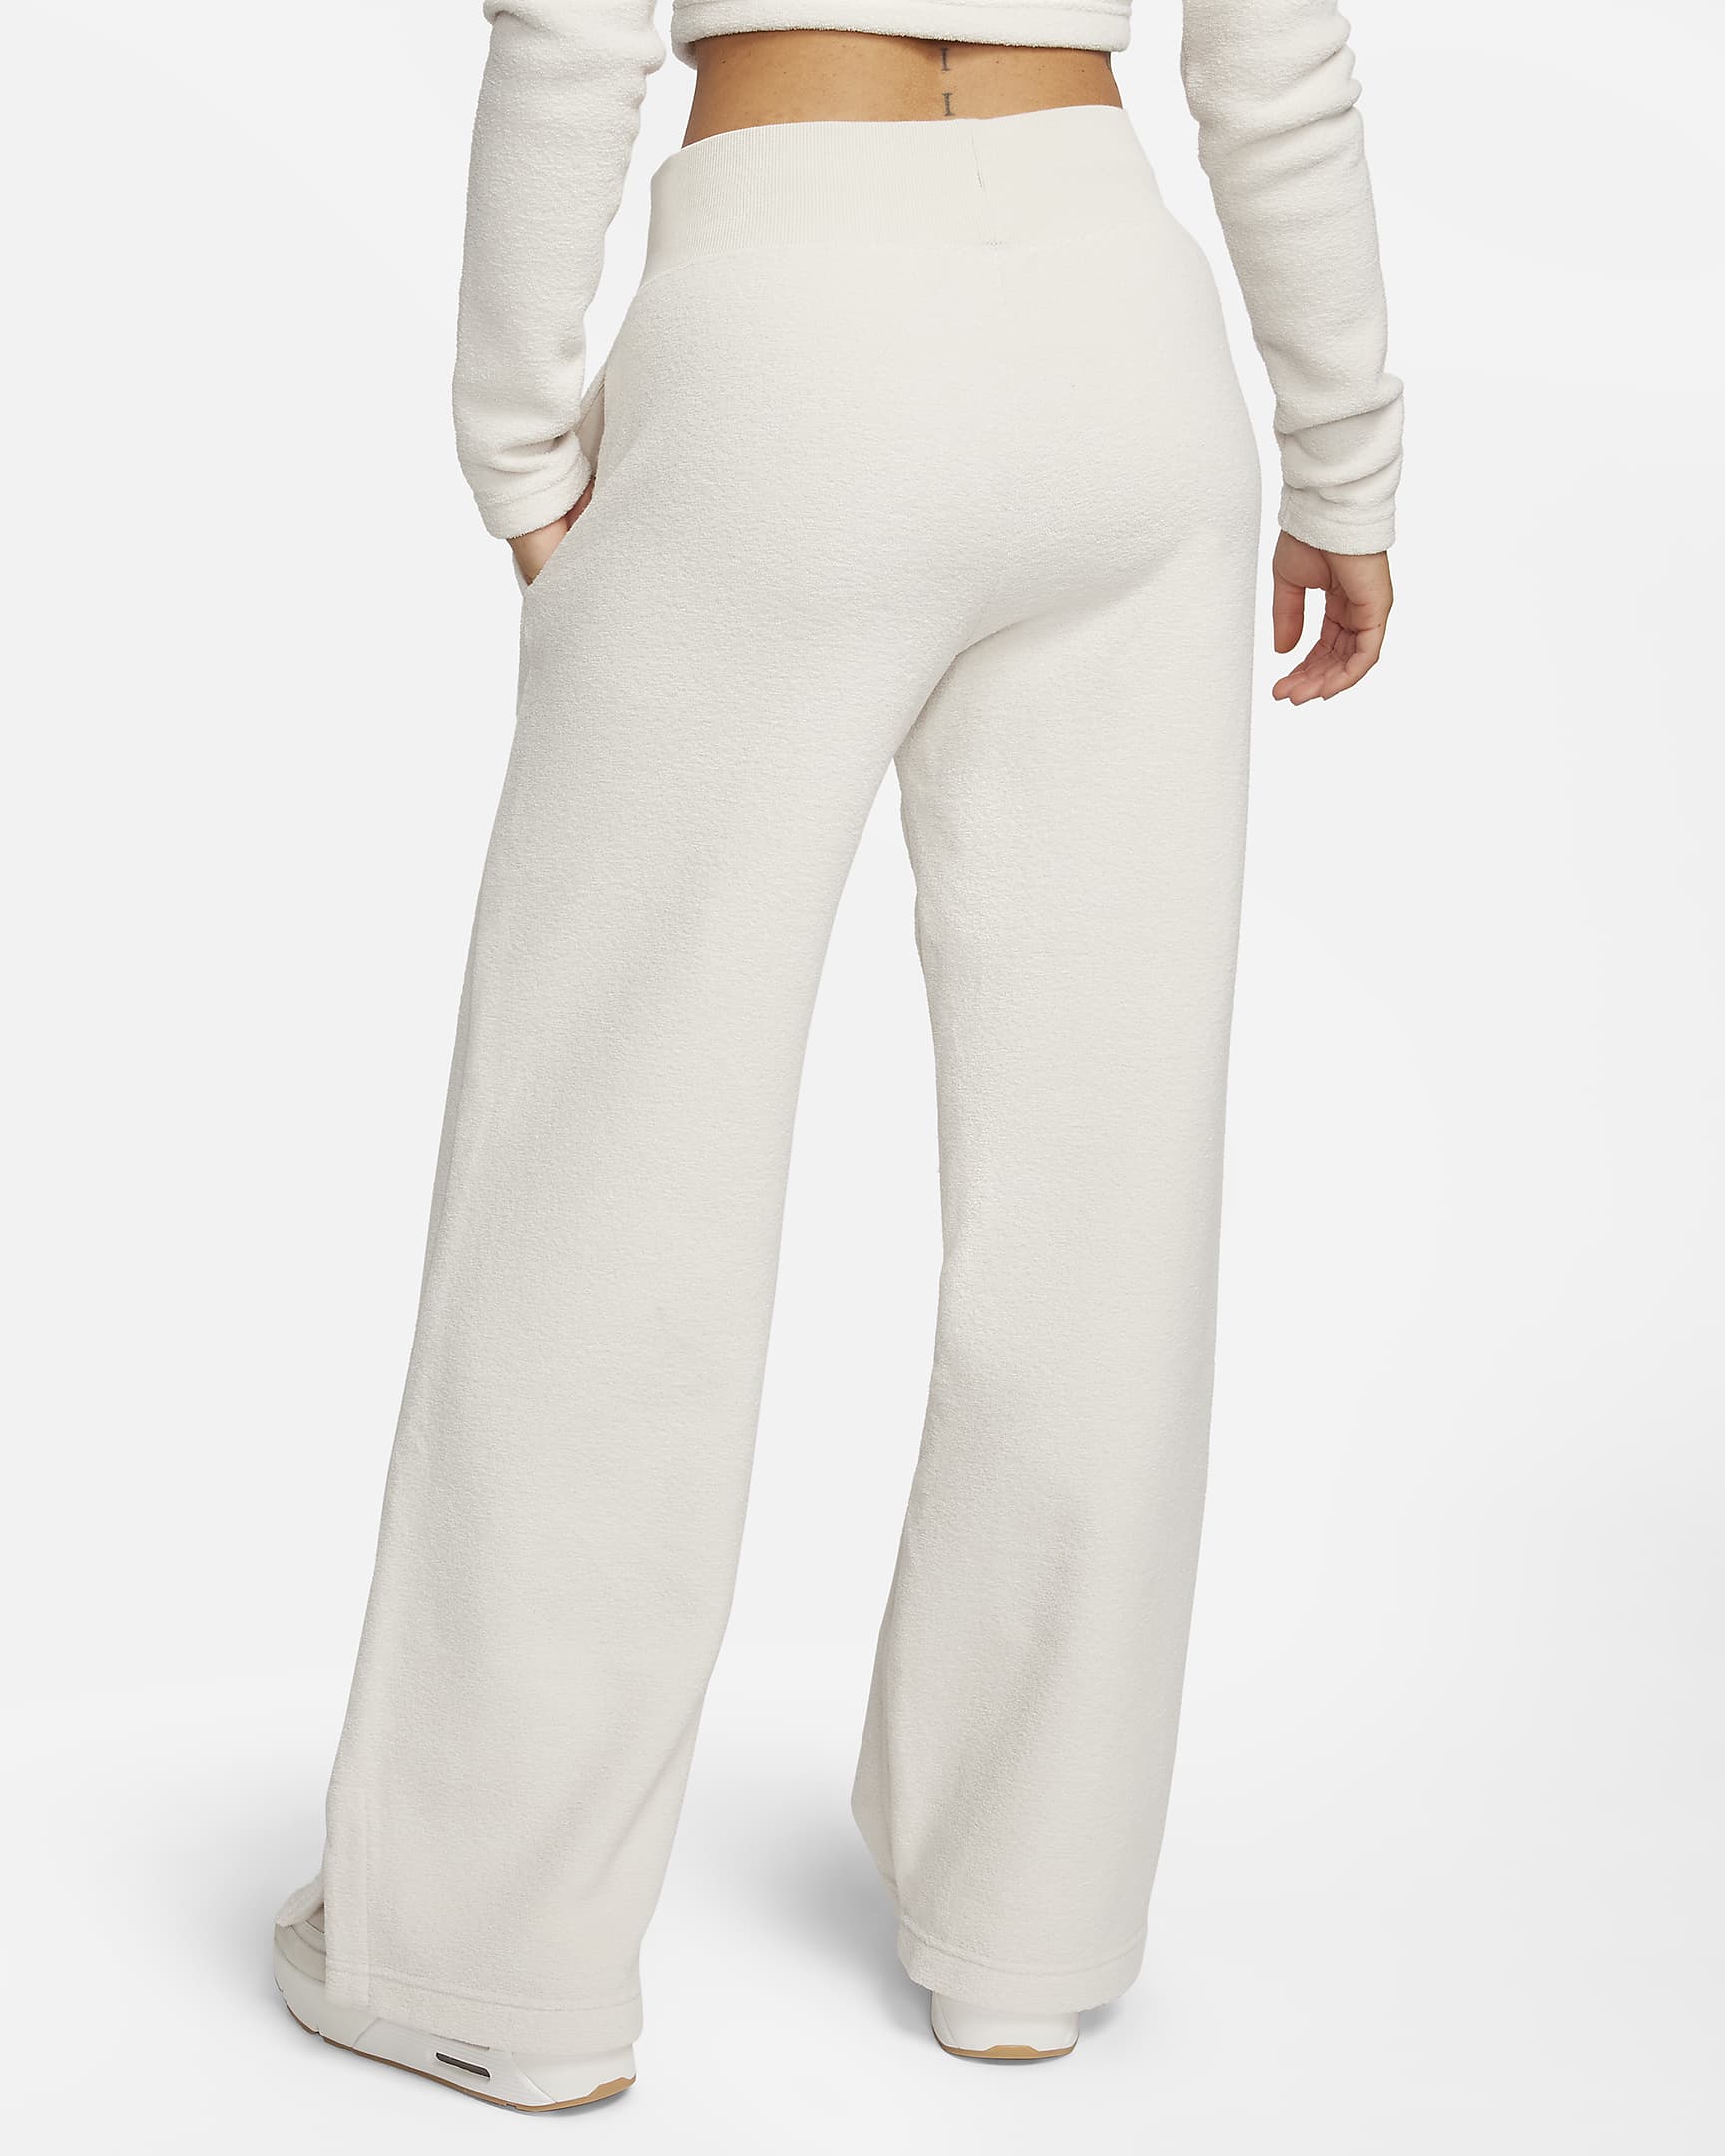 Pantalon ample à taille haute en tissu Fleece confortable Nike Sportswear Phoenix Plush pour femme - Light Orewood Brown/Sail